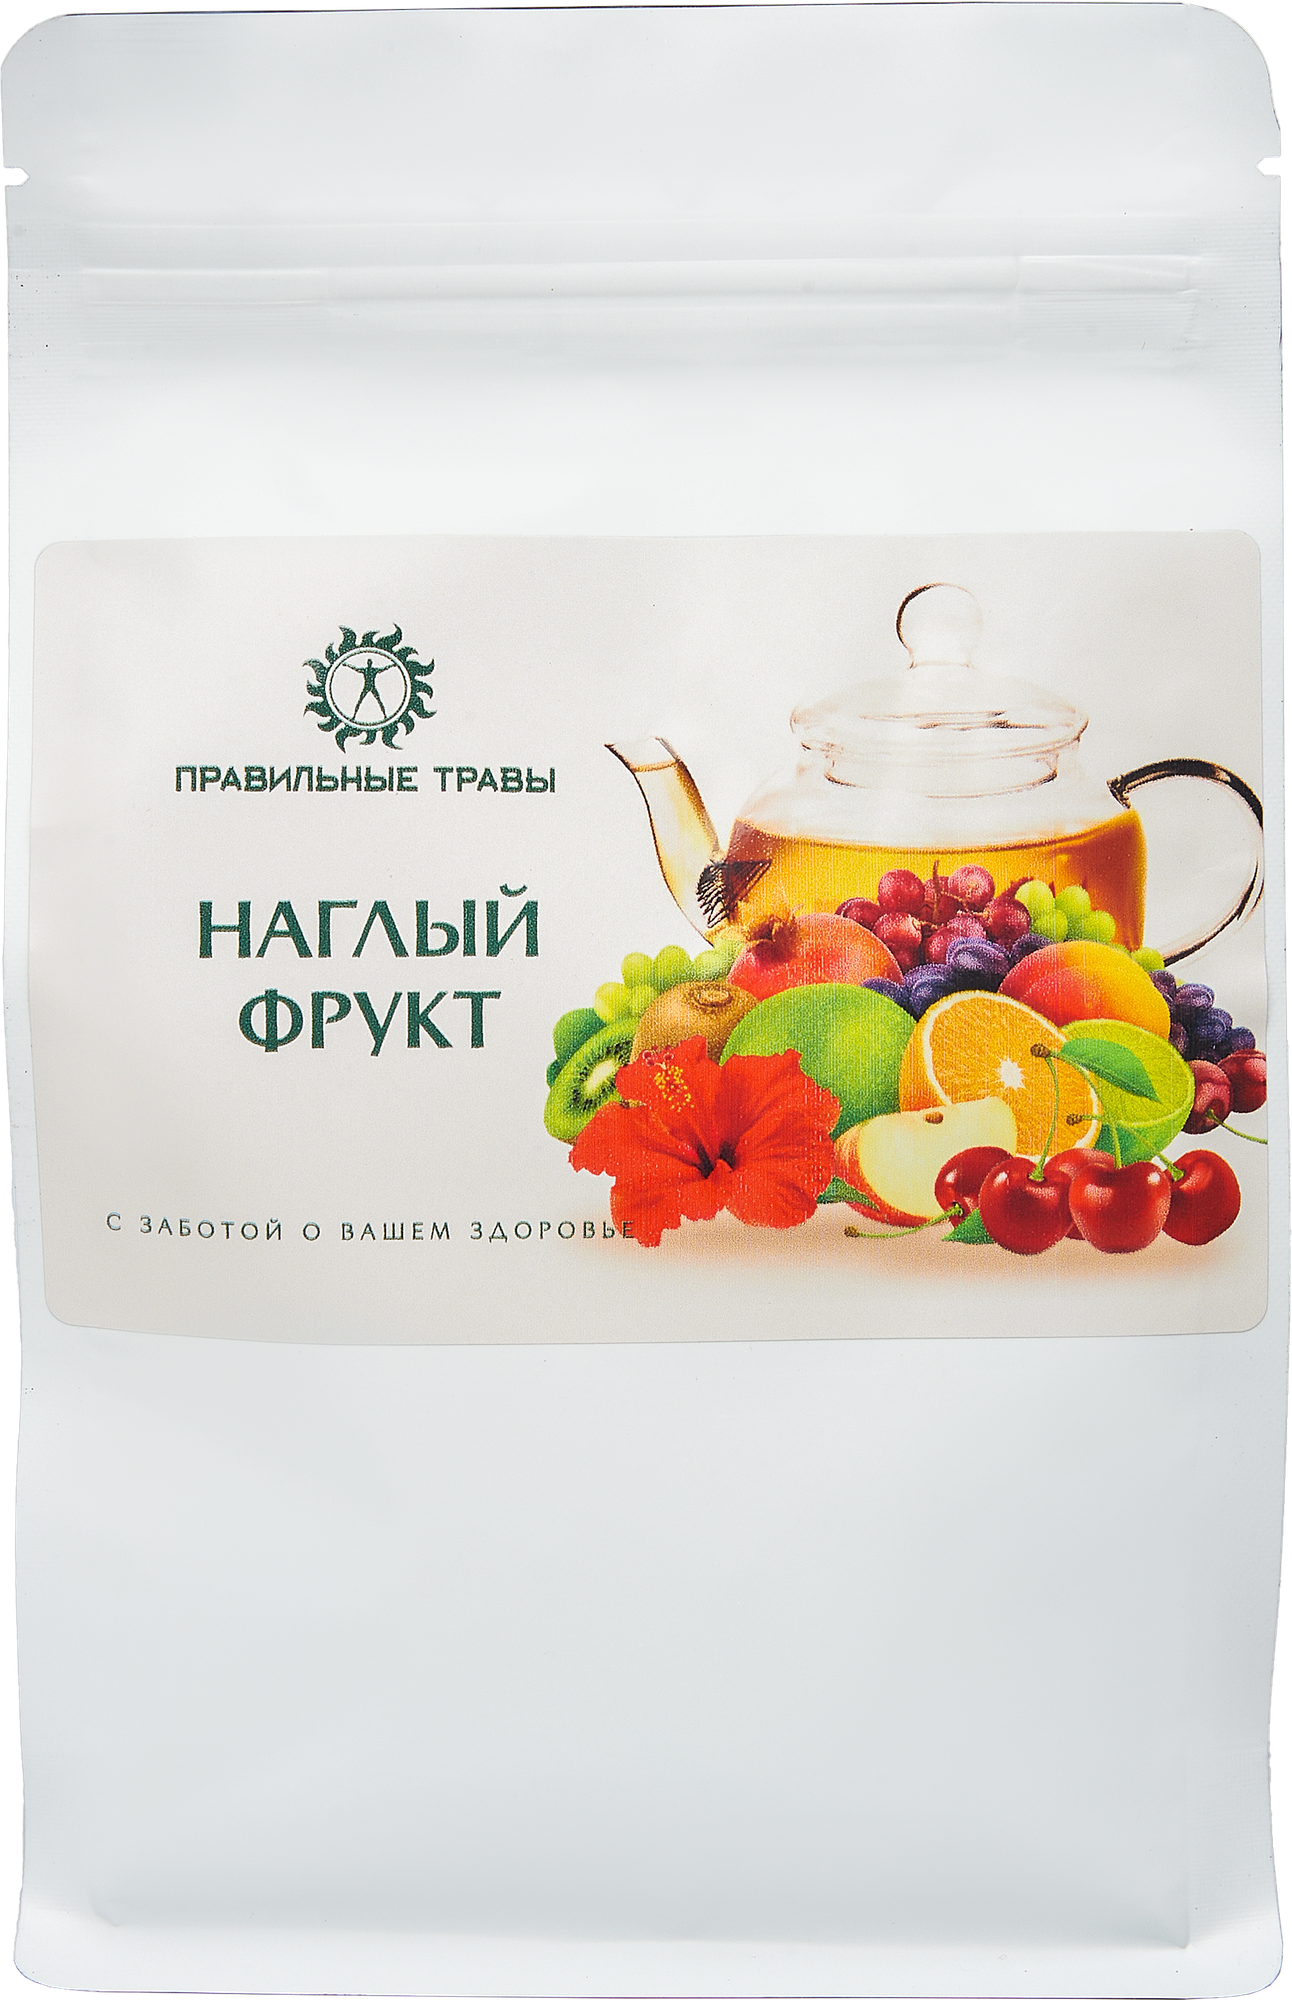 Фруктовый чай Наглый фрукт "Правильные травы" 200 г - фотография № 9